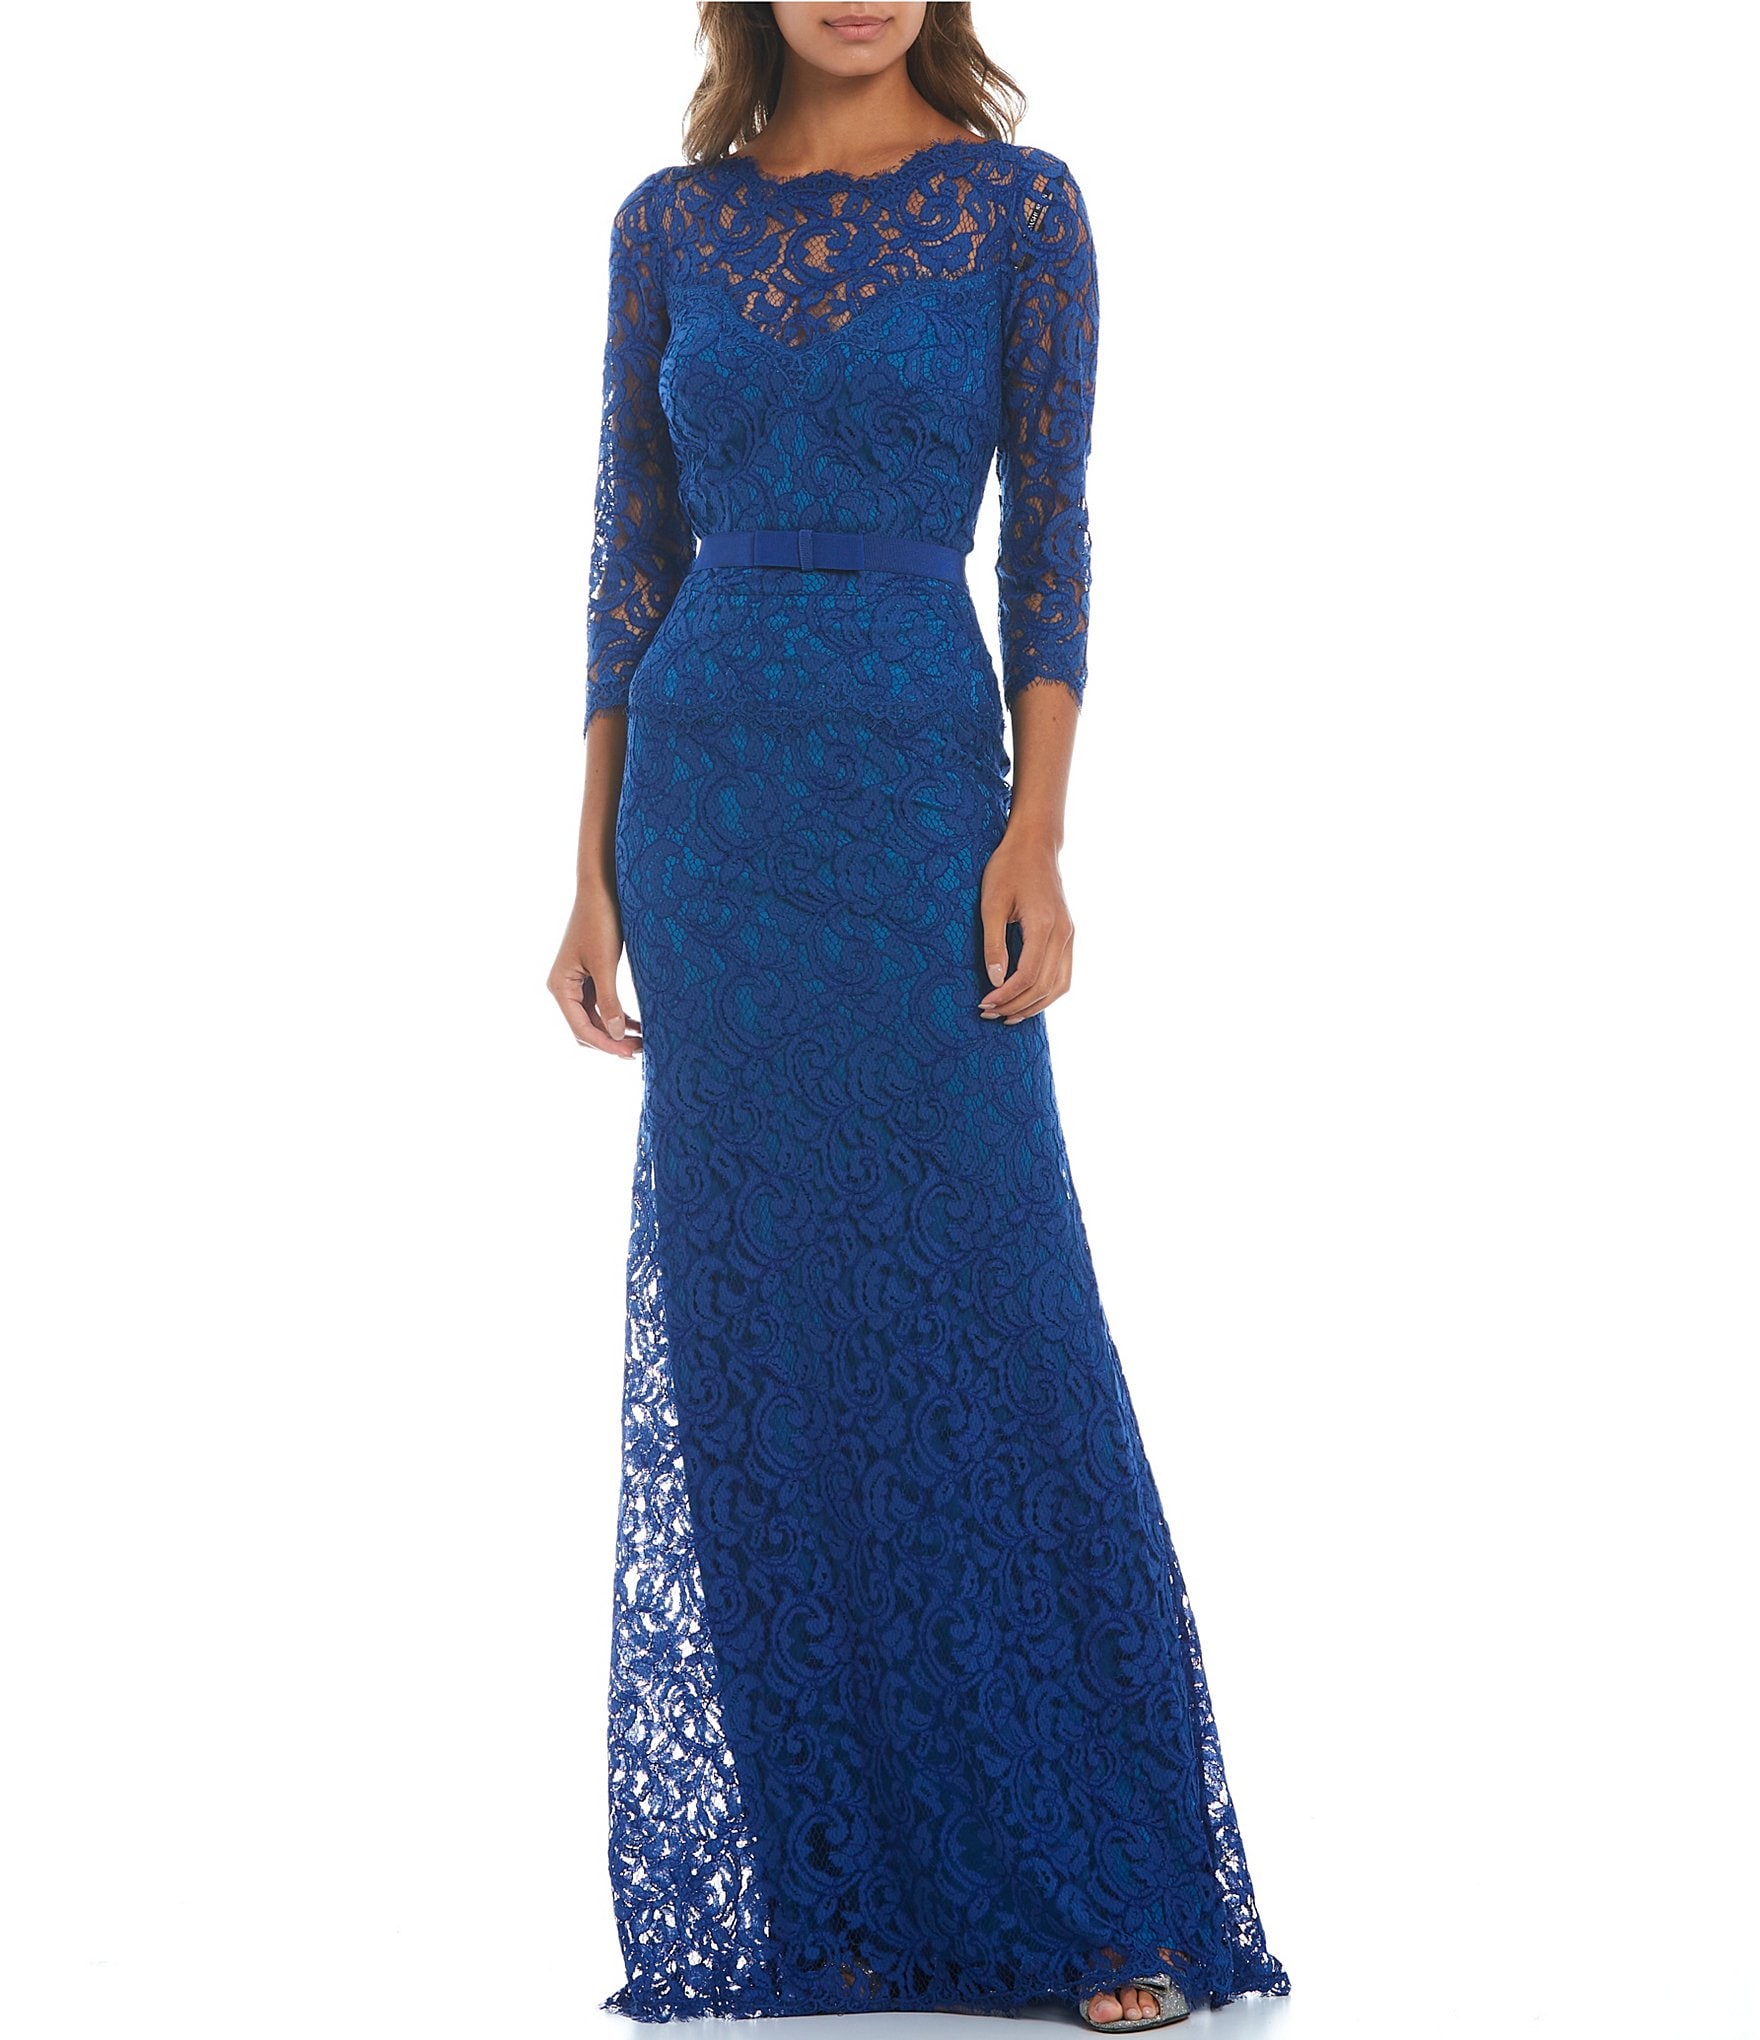 velvet: Women's Formal Dresses & Evening Gowns | Dillard's